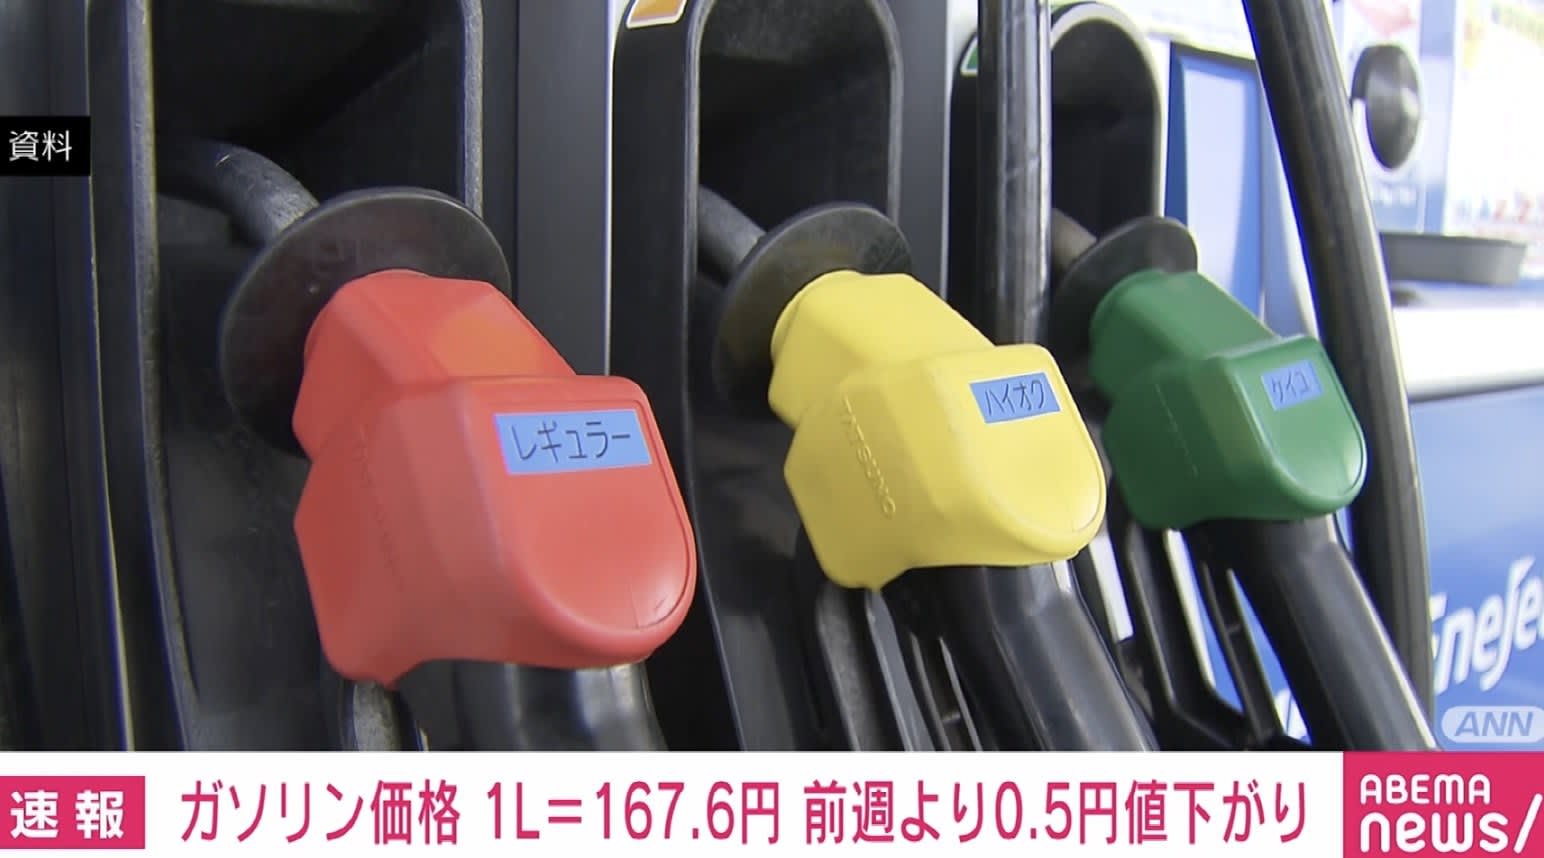 ガソリン価格 1L＝167.6円 前週より0.5円値下がり